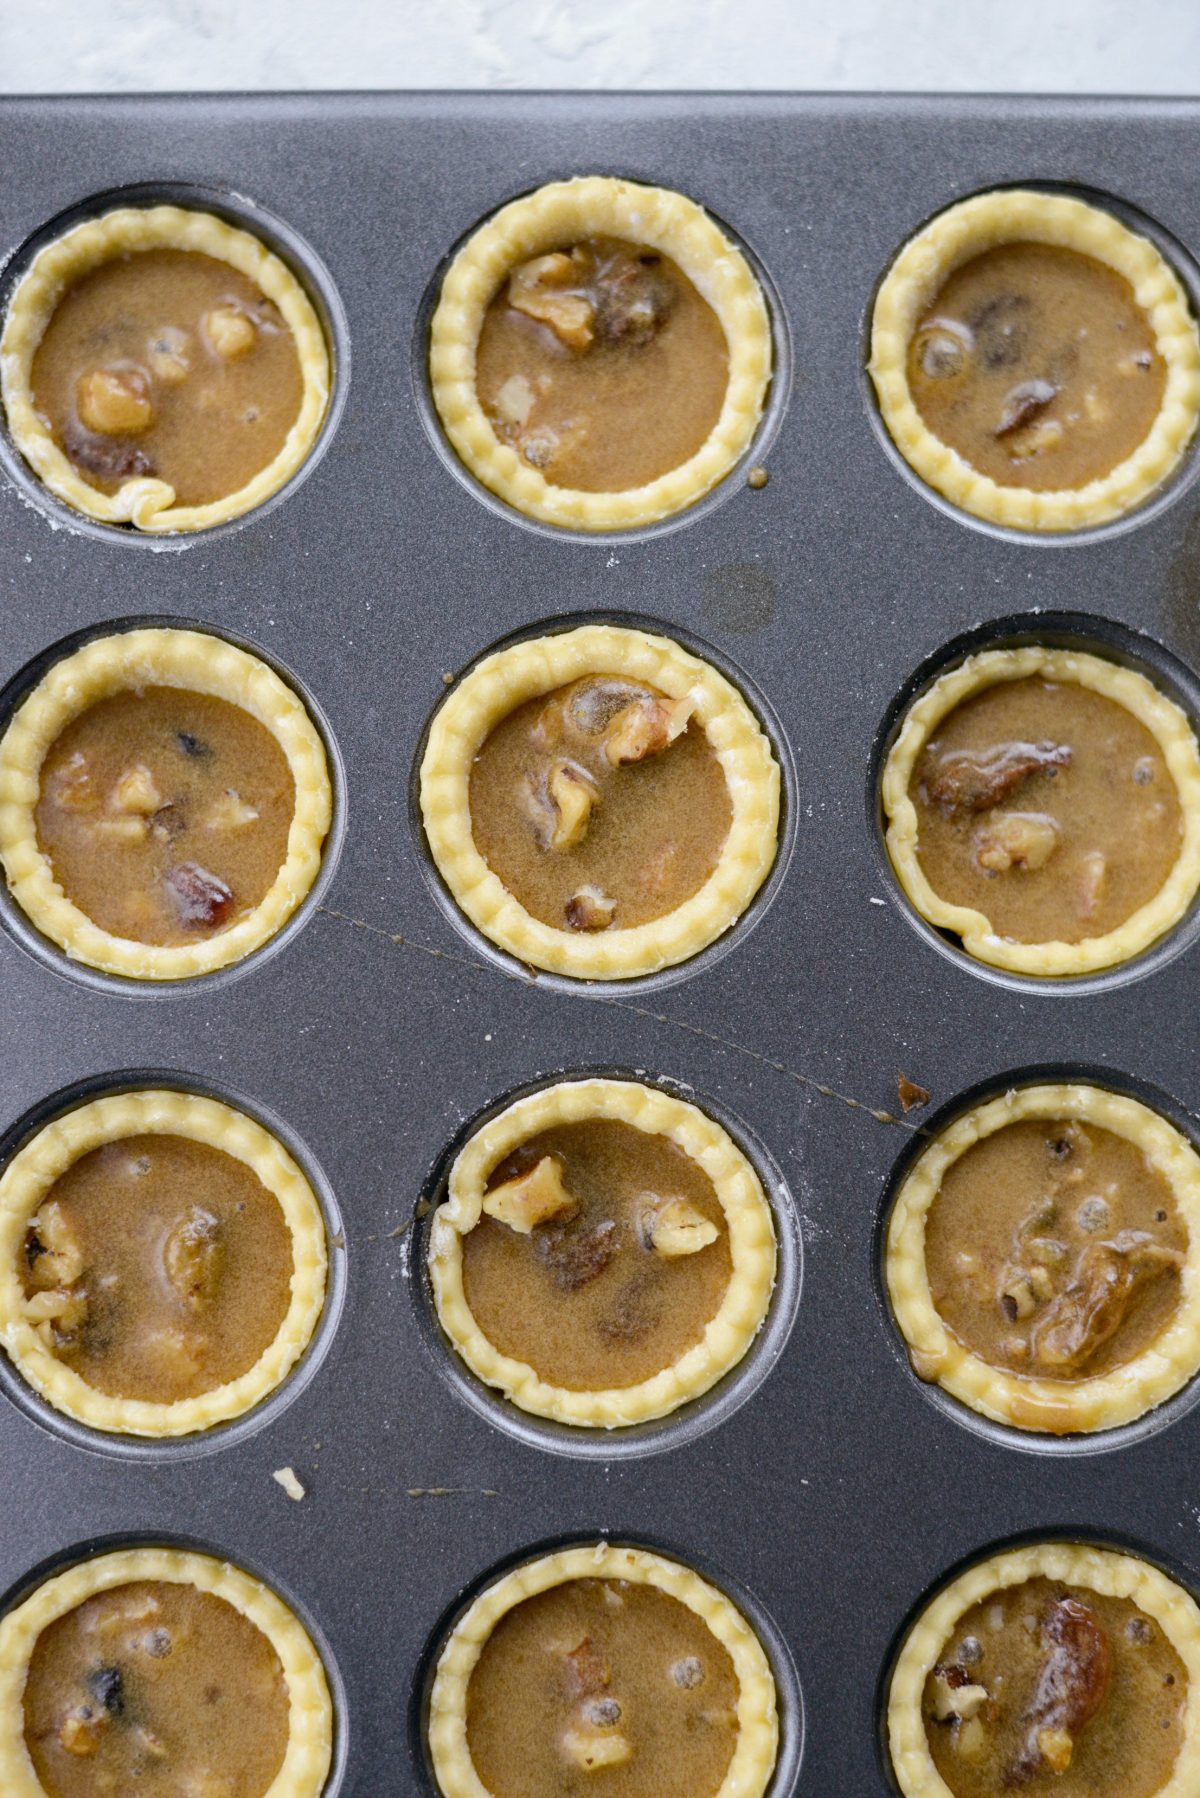 bake the mini pies